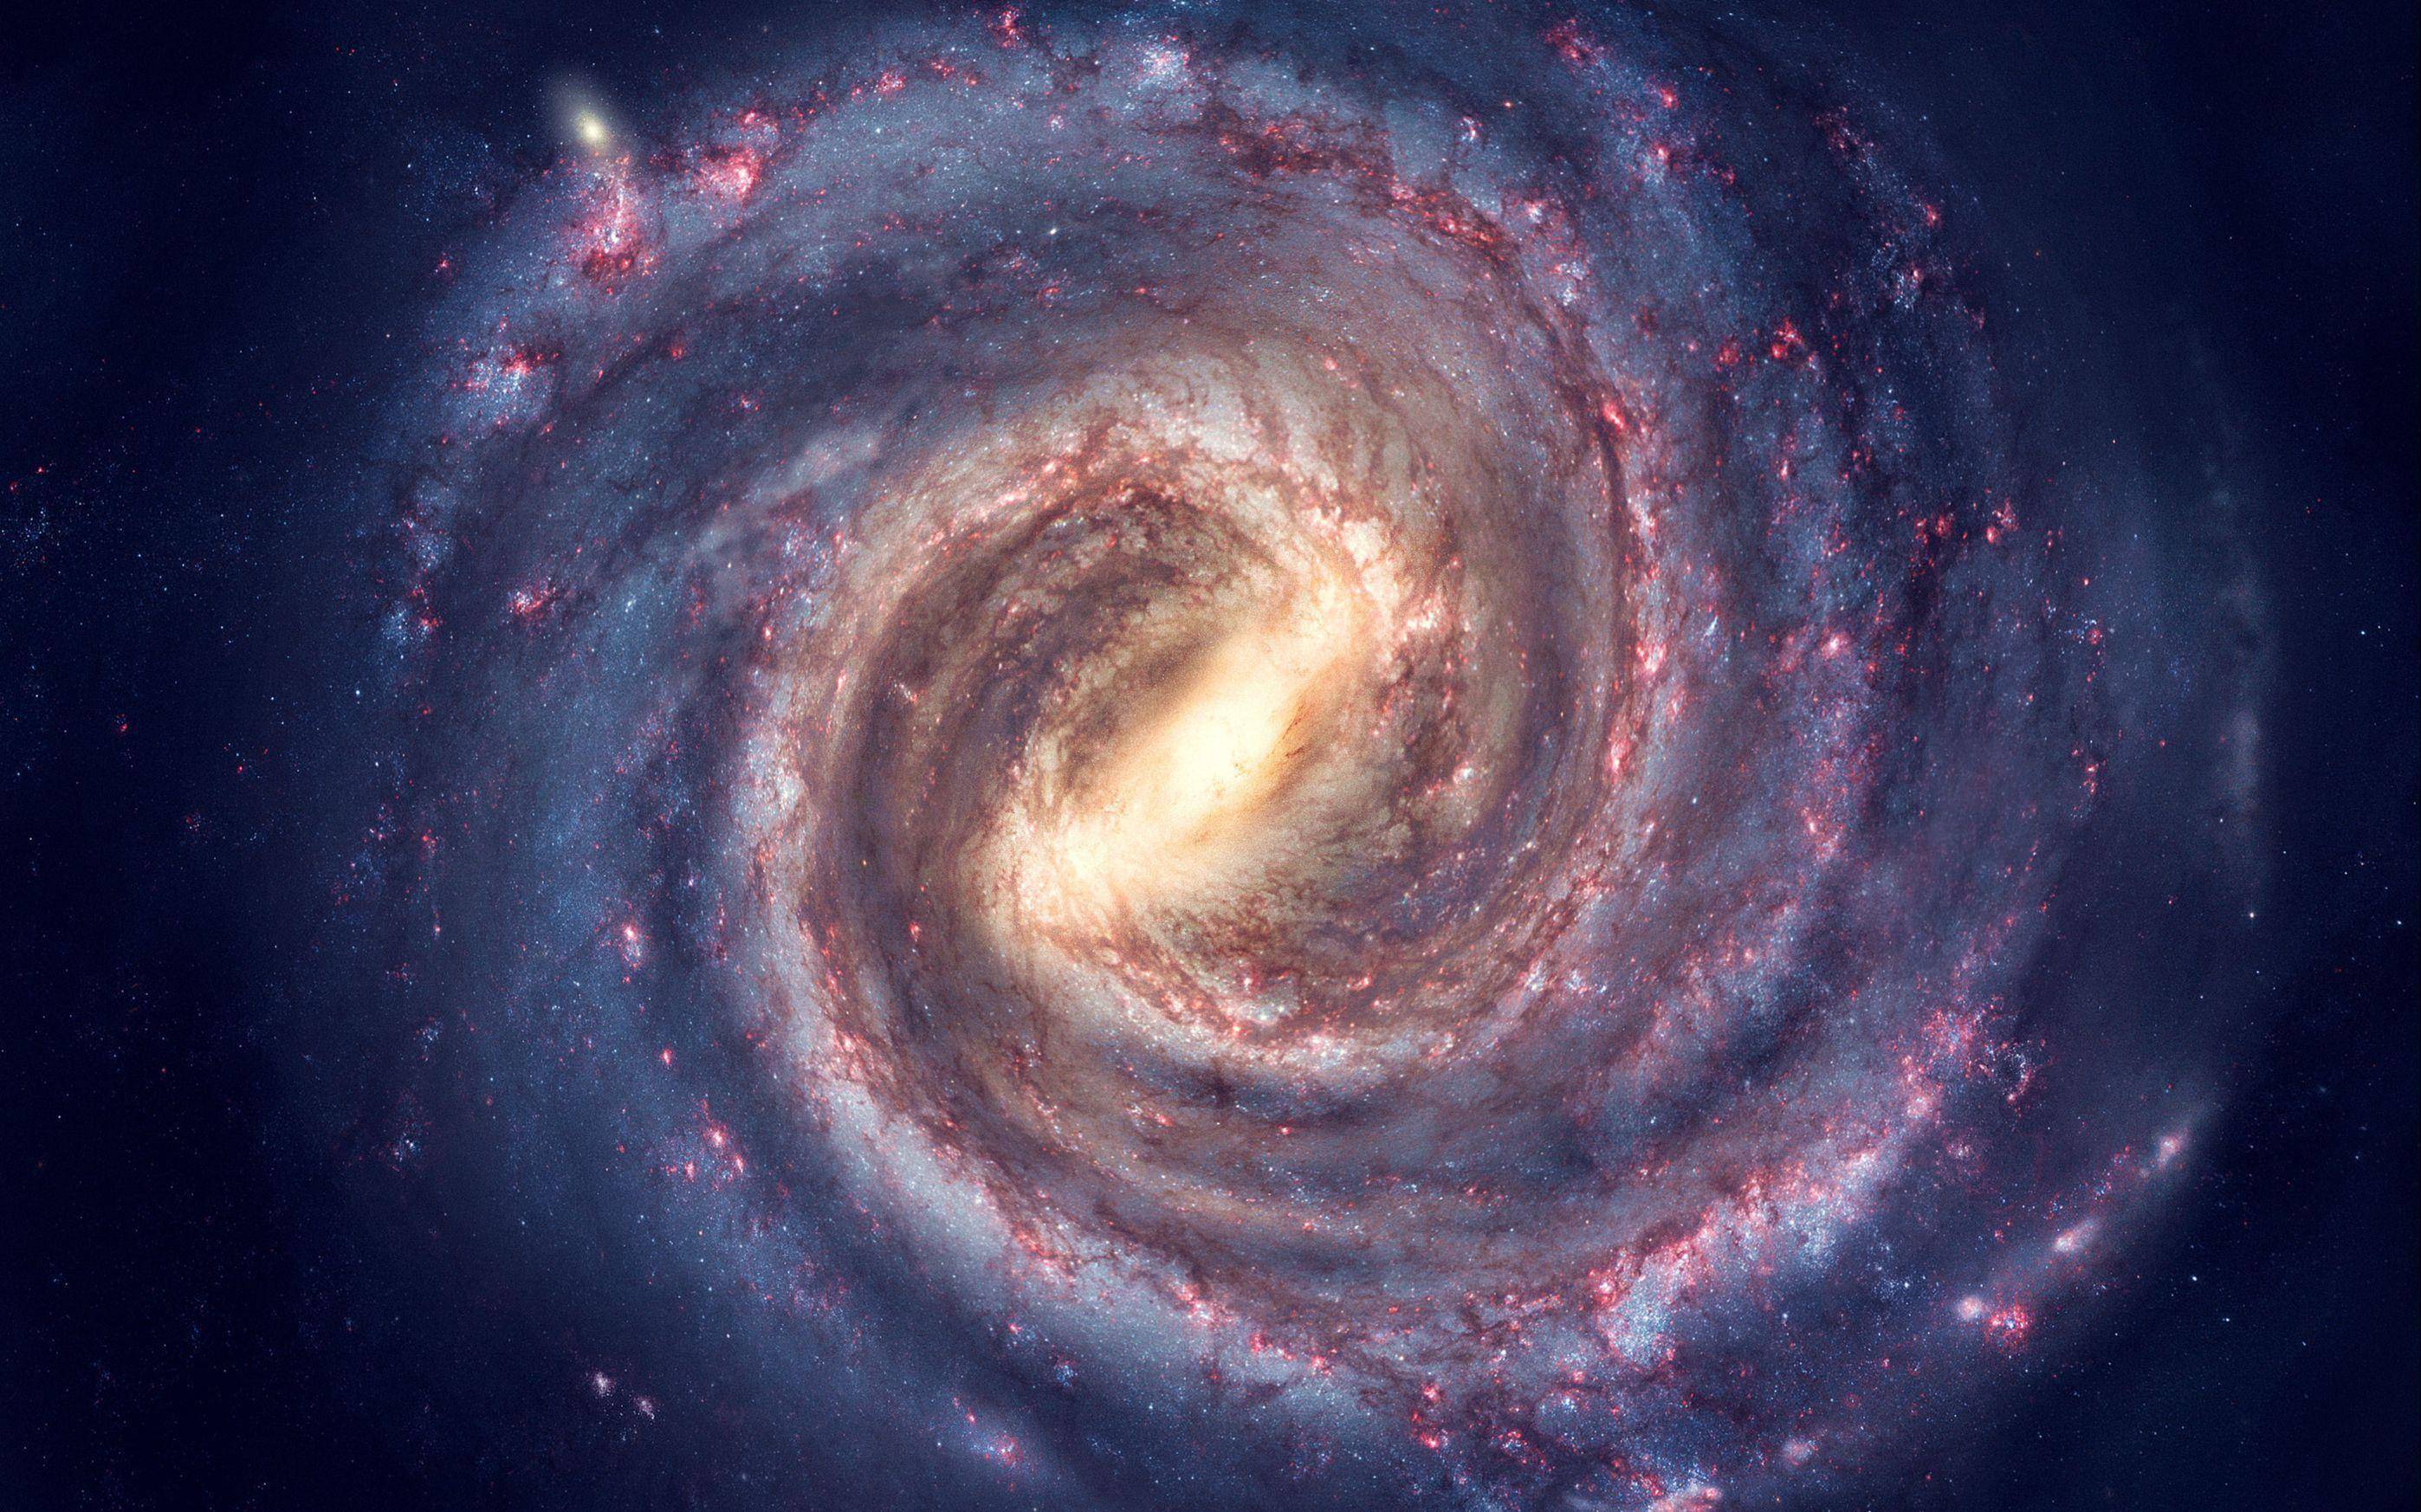 银河系还安全吗?科学家:银河系旋臂已断裂,银河系可能正在解体